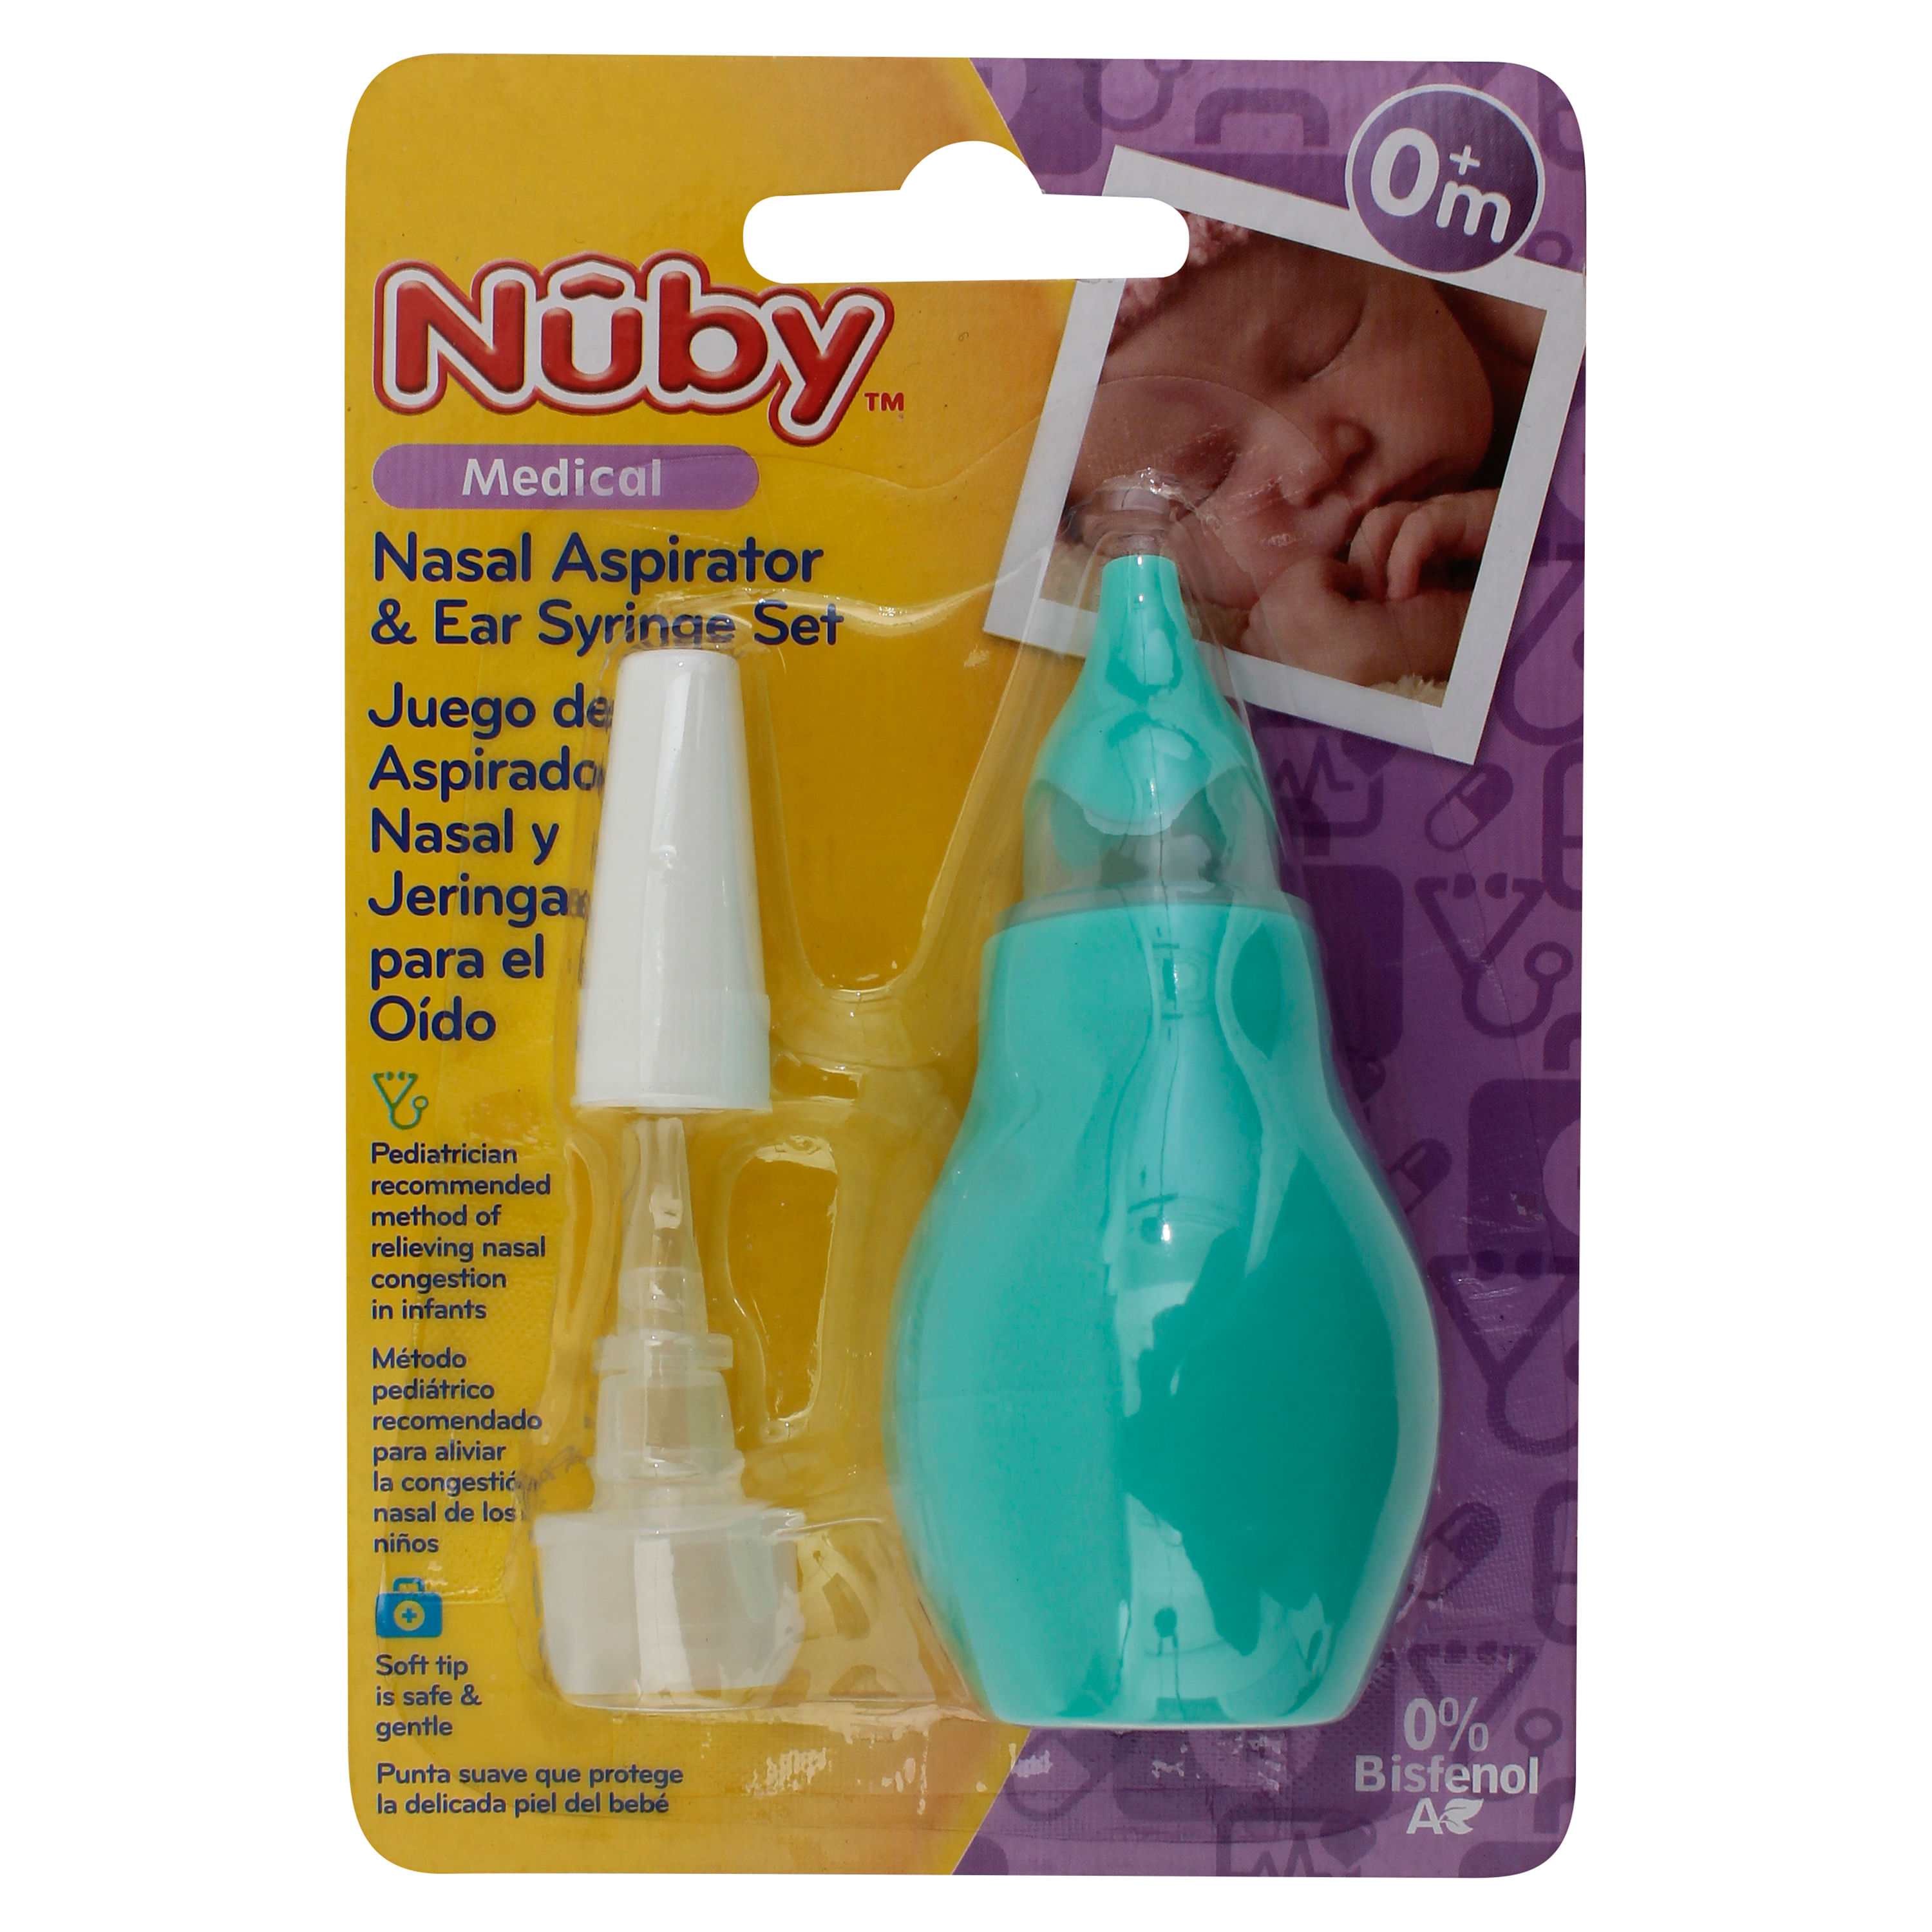 Cómo usar un aspirador nasal con tu bebé - #CuidadosSuavinex 